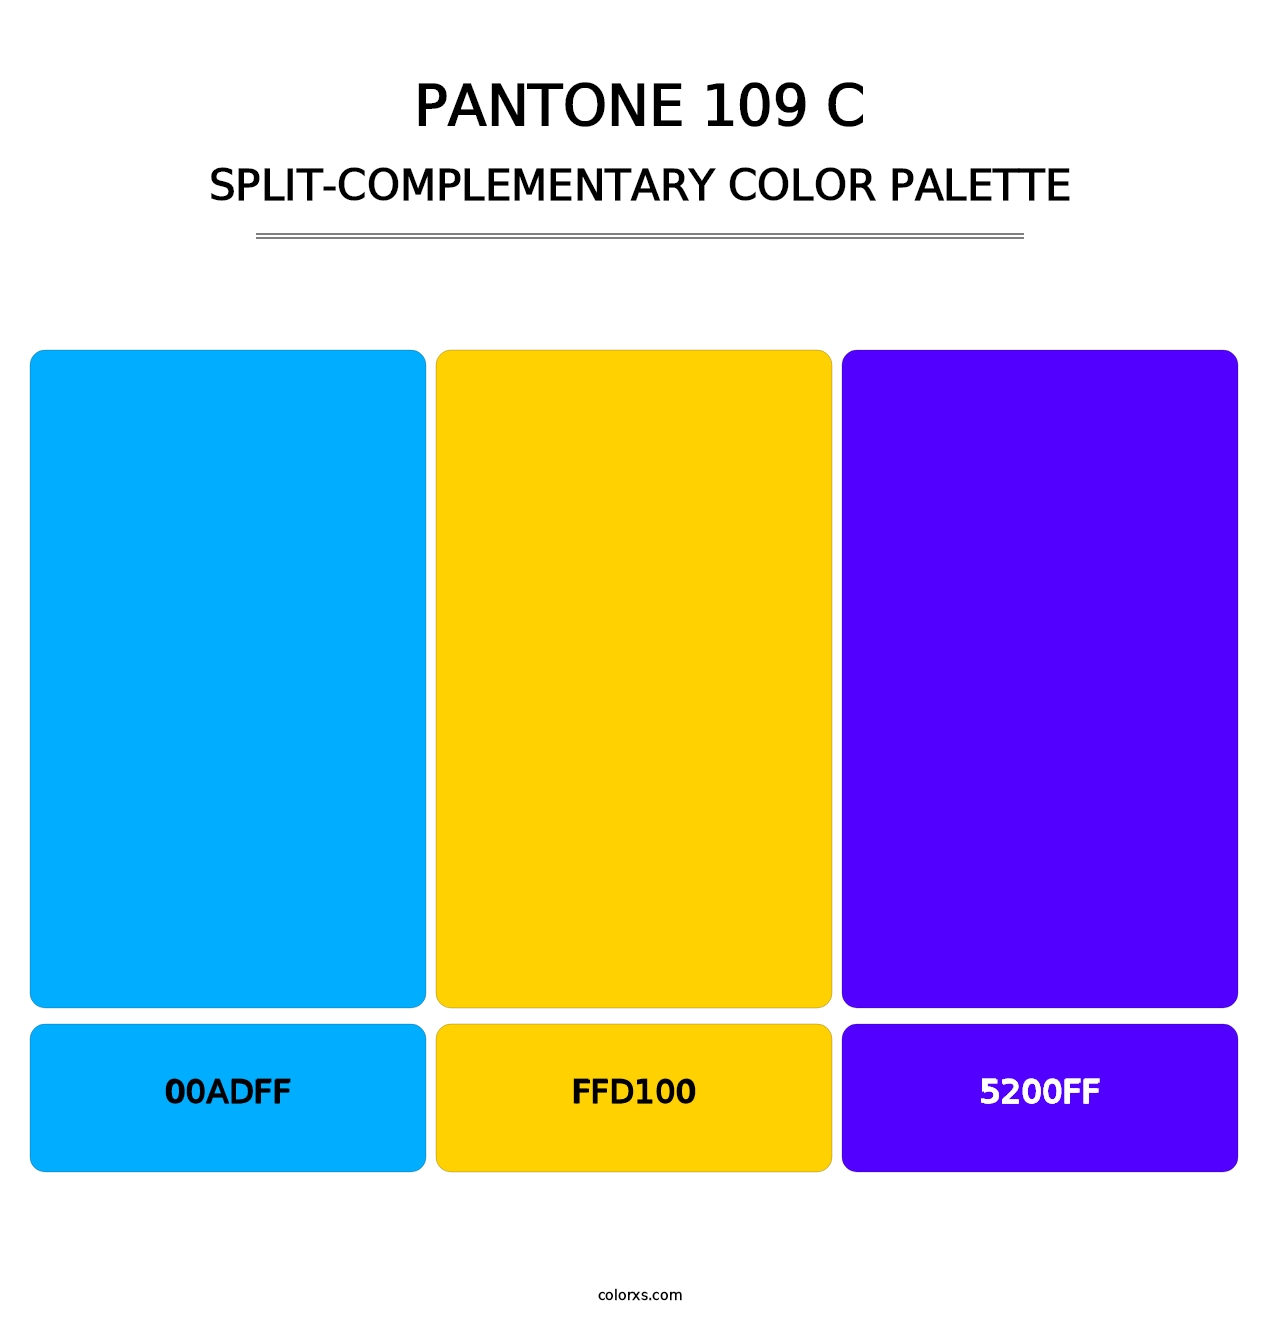 PANTONE 109 C - Split-Complementary Color Palette